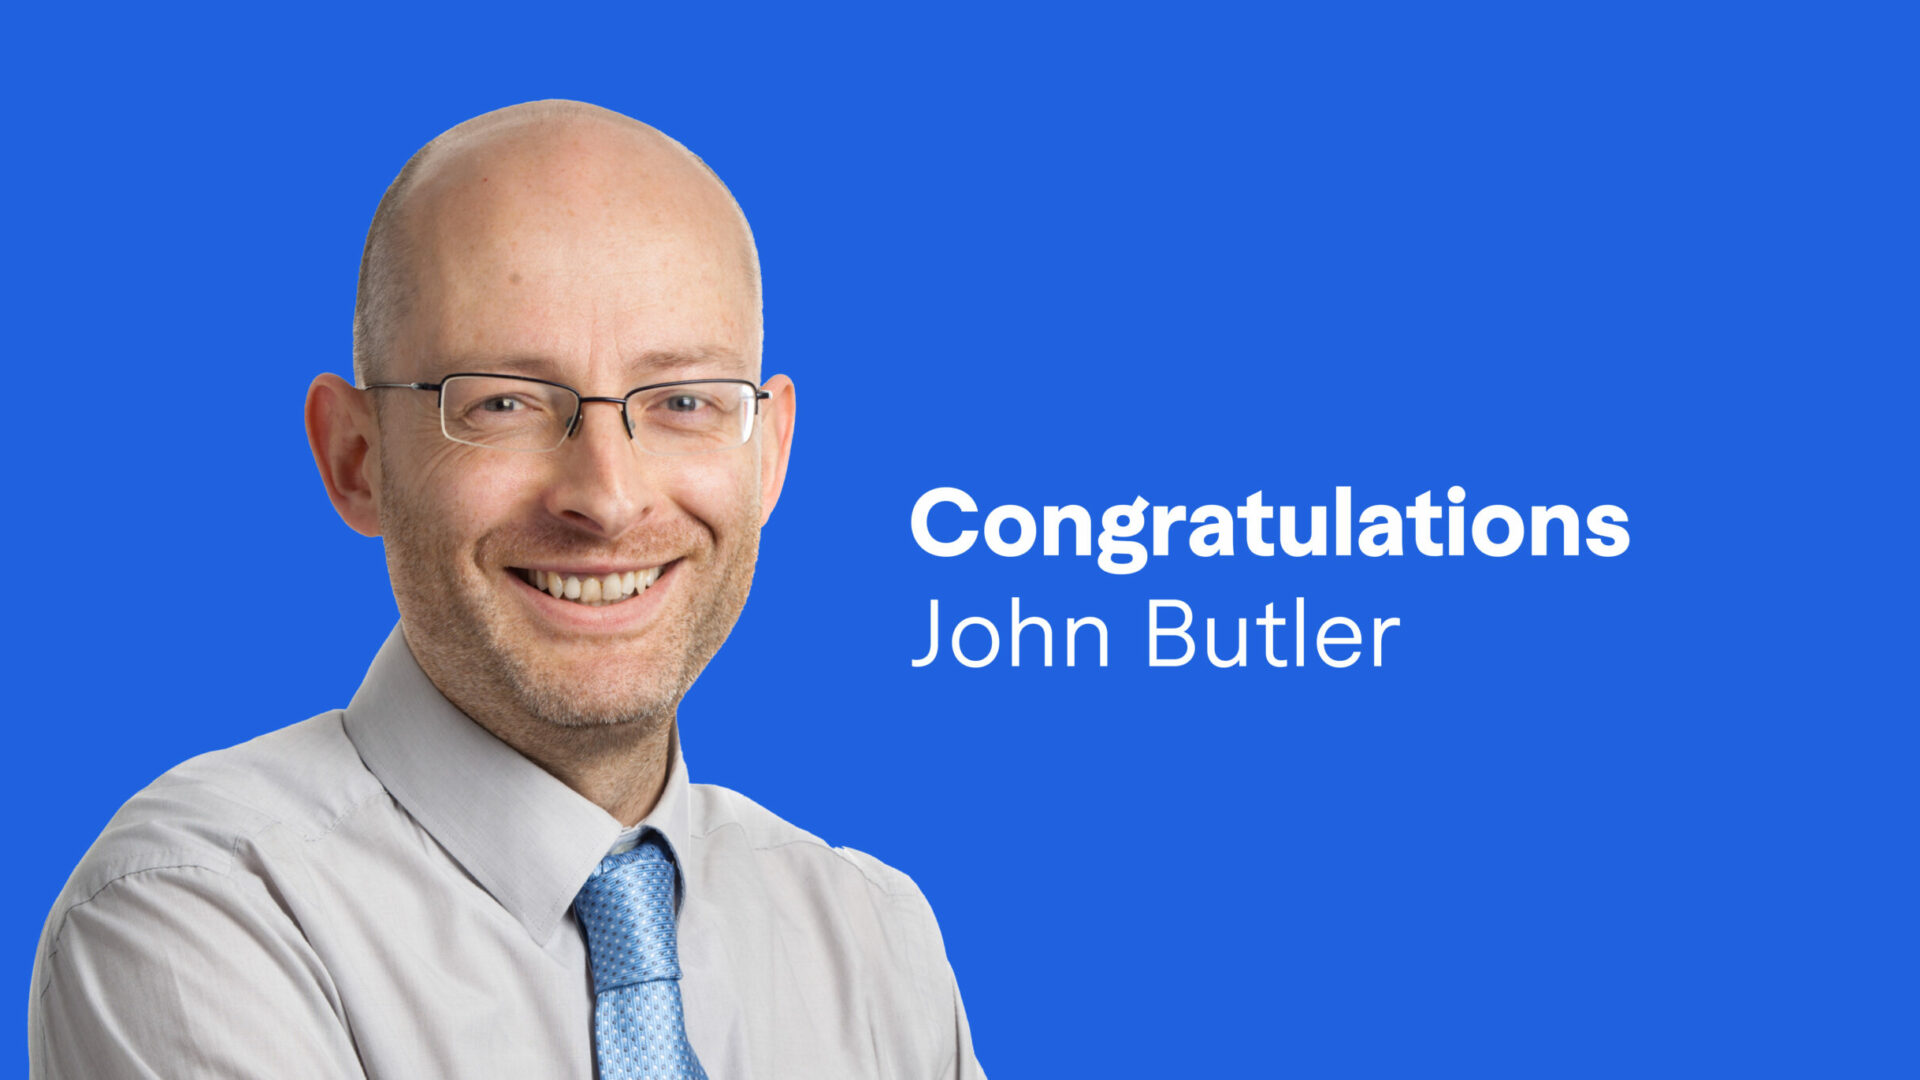 Congratulations to John Butler